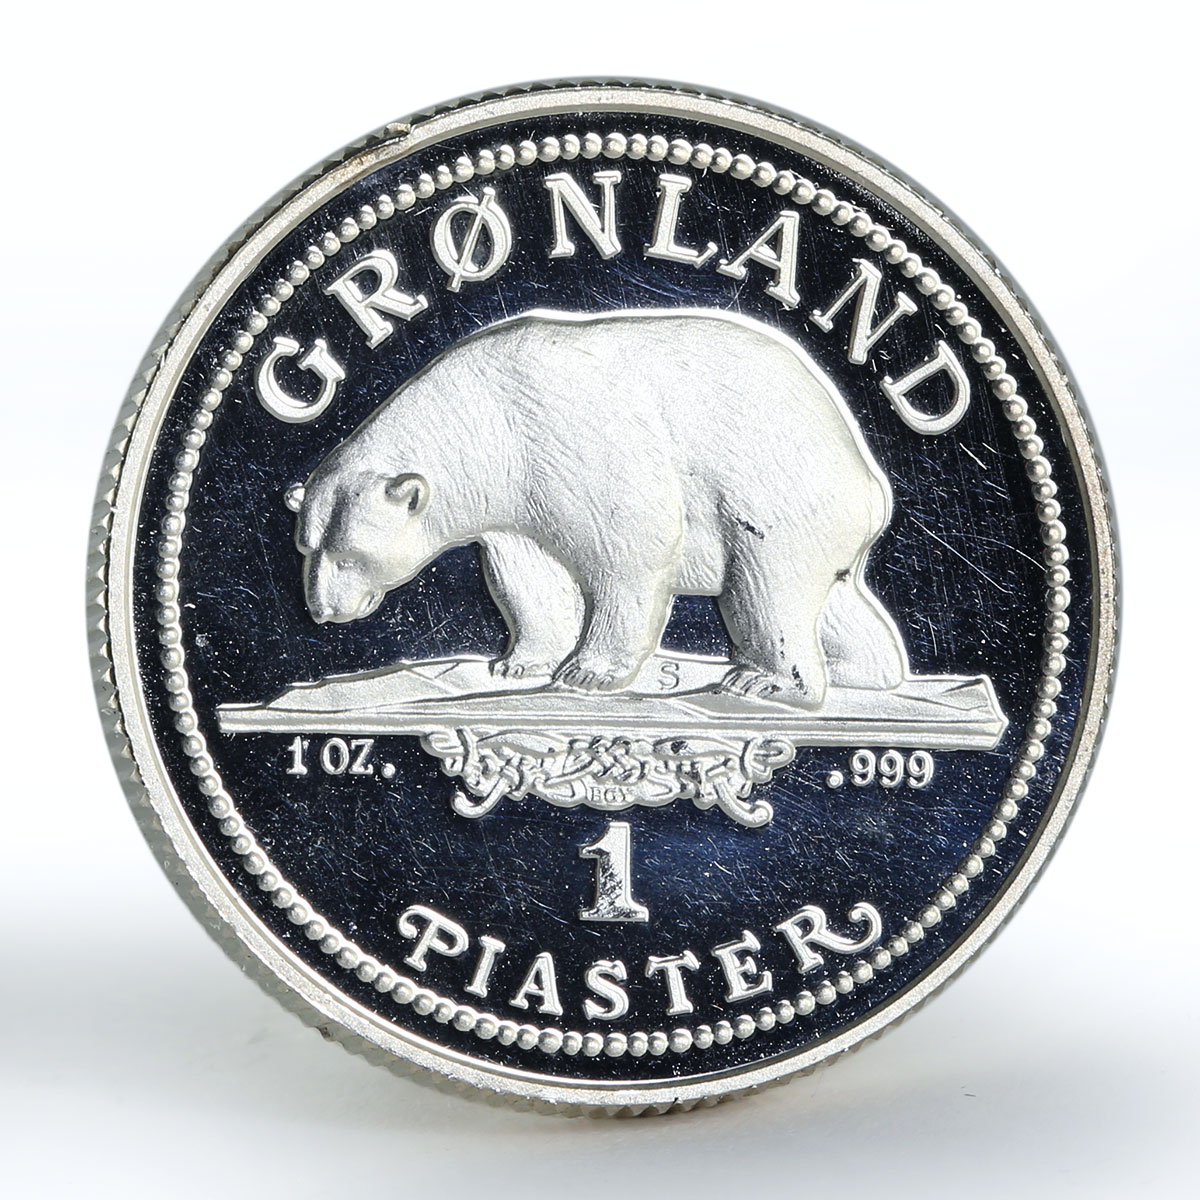 Denmark 1 piaster Greenland Polar Bear proof silver coin 1989